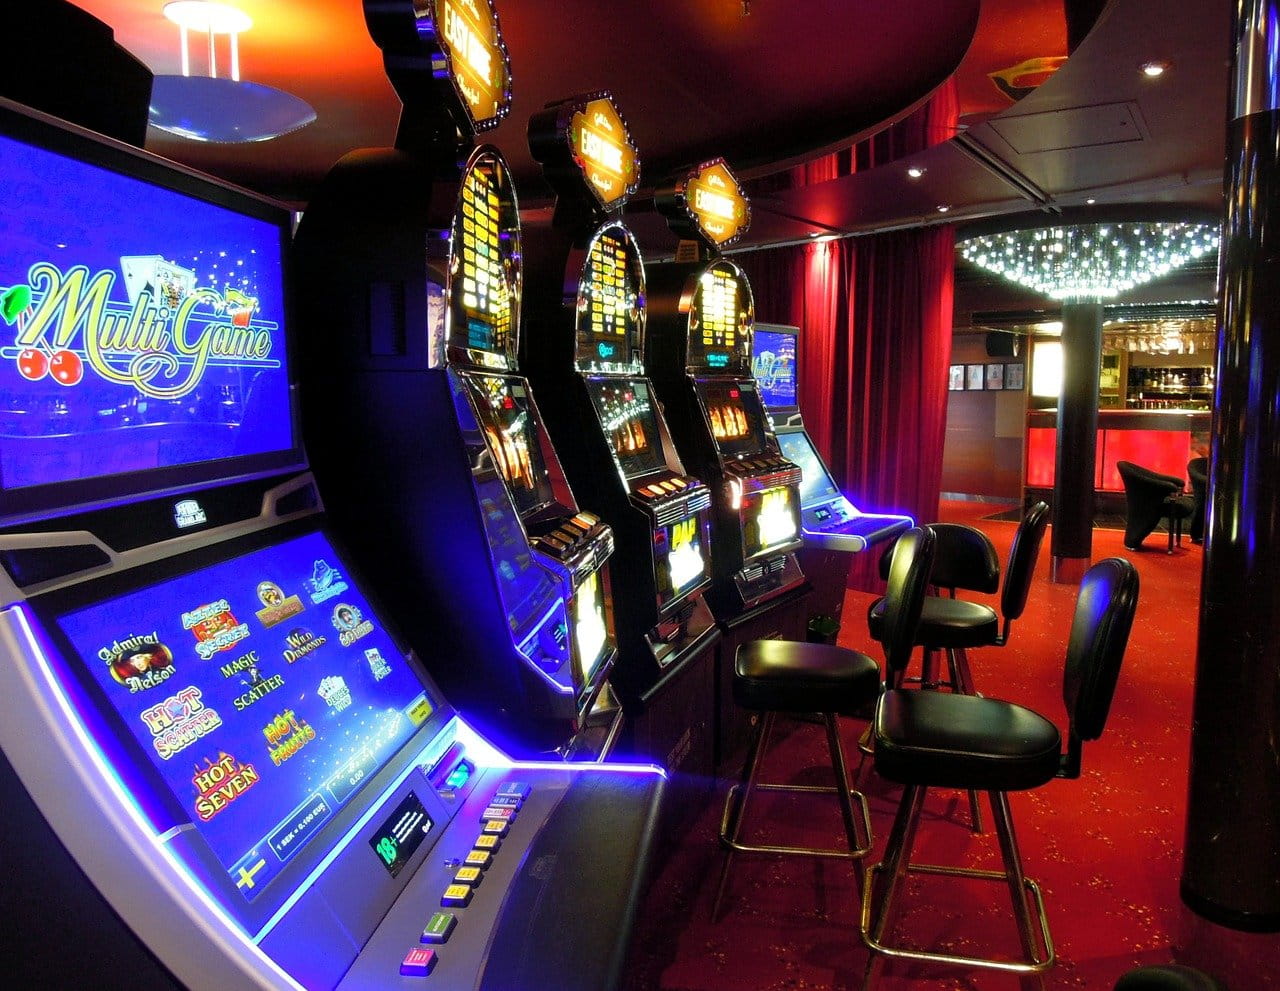 Glücksspielautomaten in einer Spielhalle.